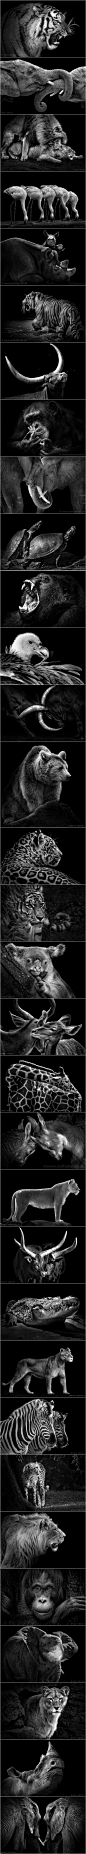 摄影师Wolf Ademeit拍摄的动物, 用黑白照片诠释了动物的霸气和灵性